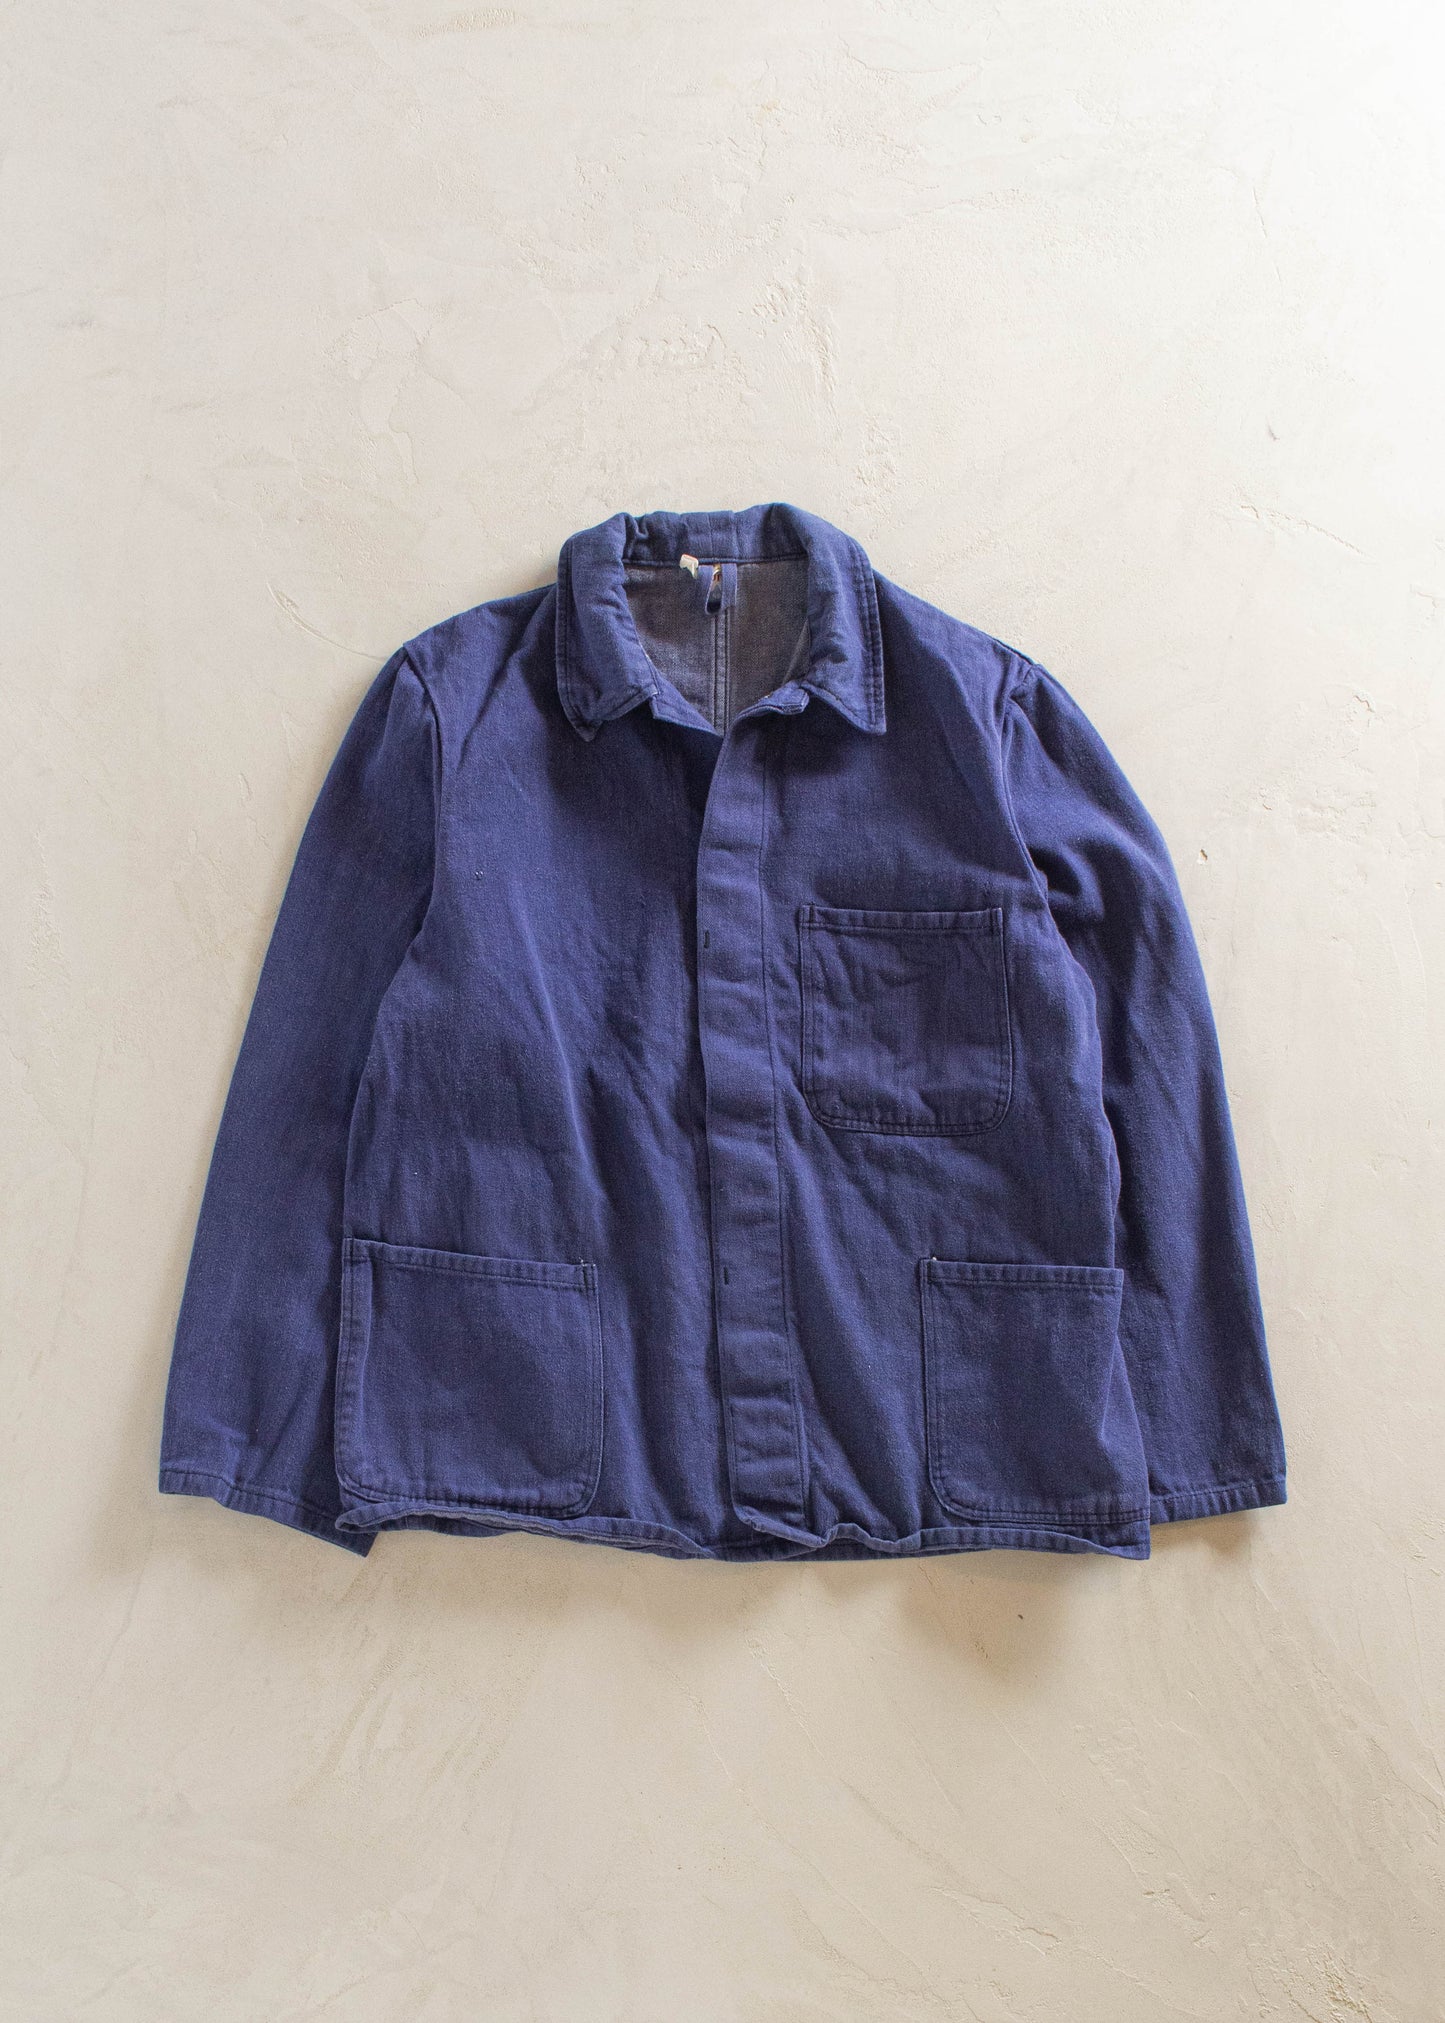 1980s Kuno French Workwear Chore Jacket Size XS/S